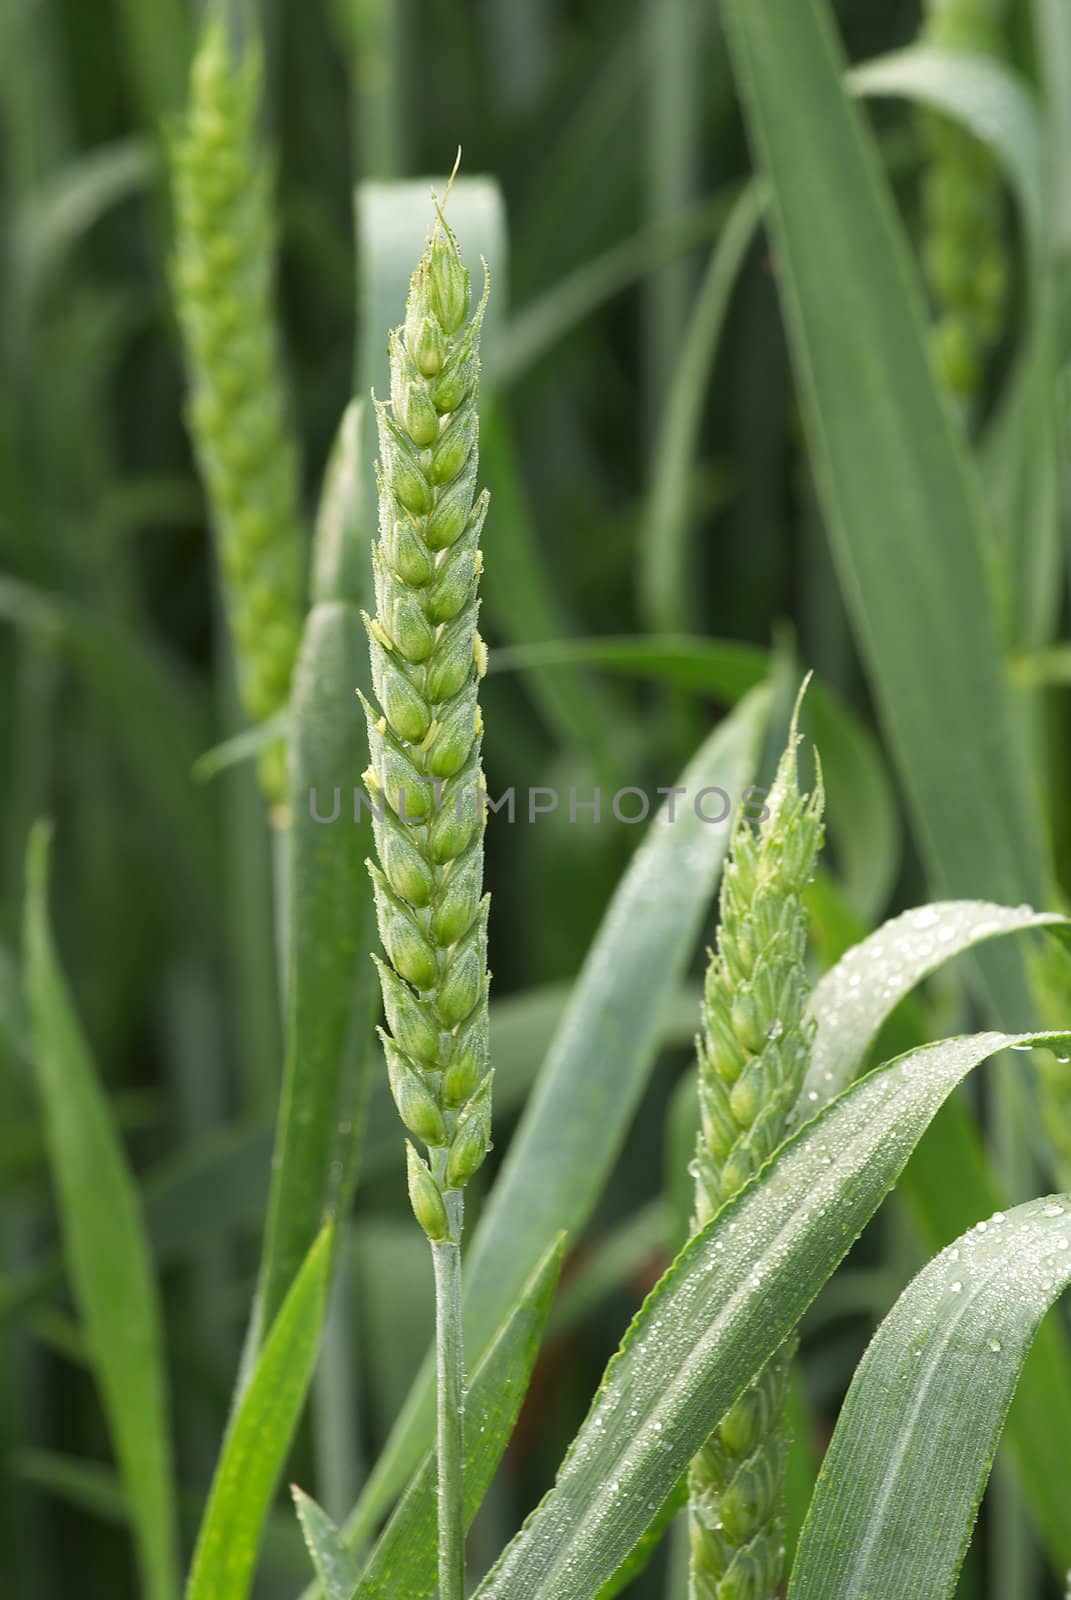 Ear of wheat by Kamensky